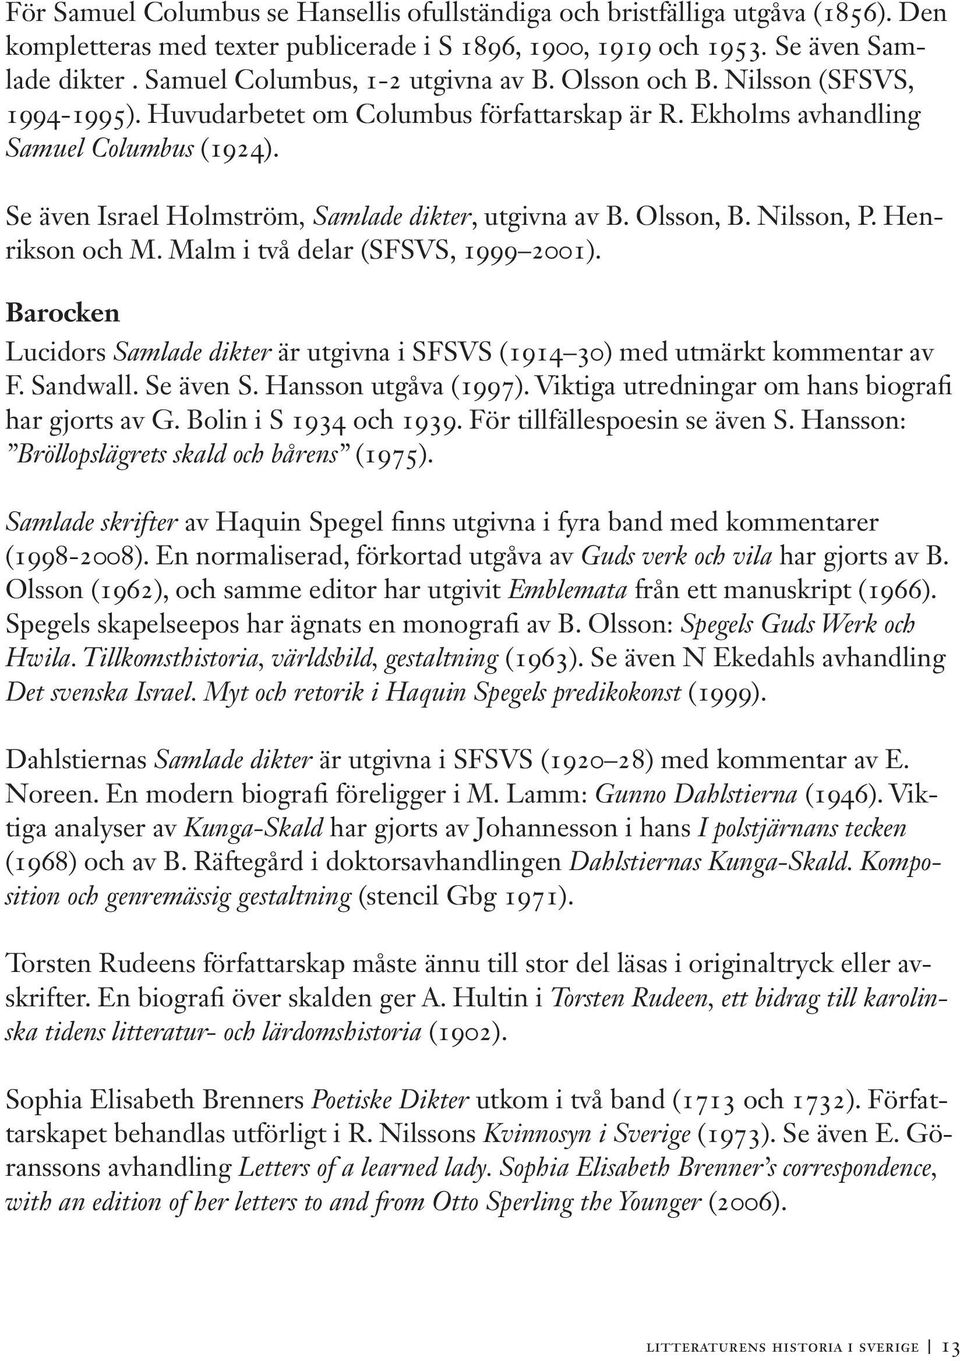 Se även Israel Holmström, Samlade dikter, utgivna av B. Olsson, B. Nilsson, P. Henrikson och M. Malm i två delar (SFSVS, 1999 2001).